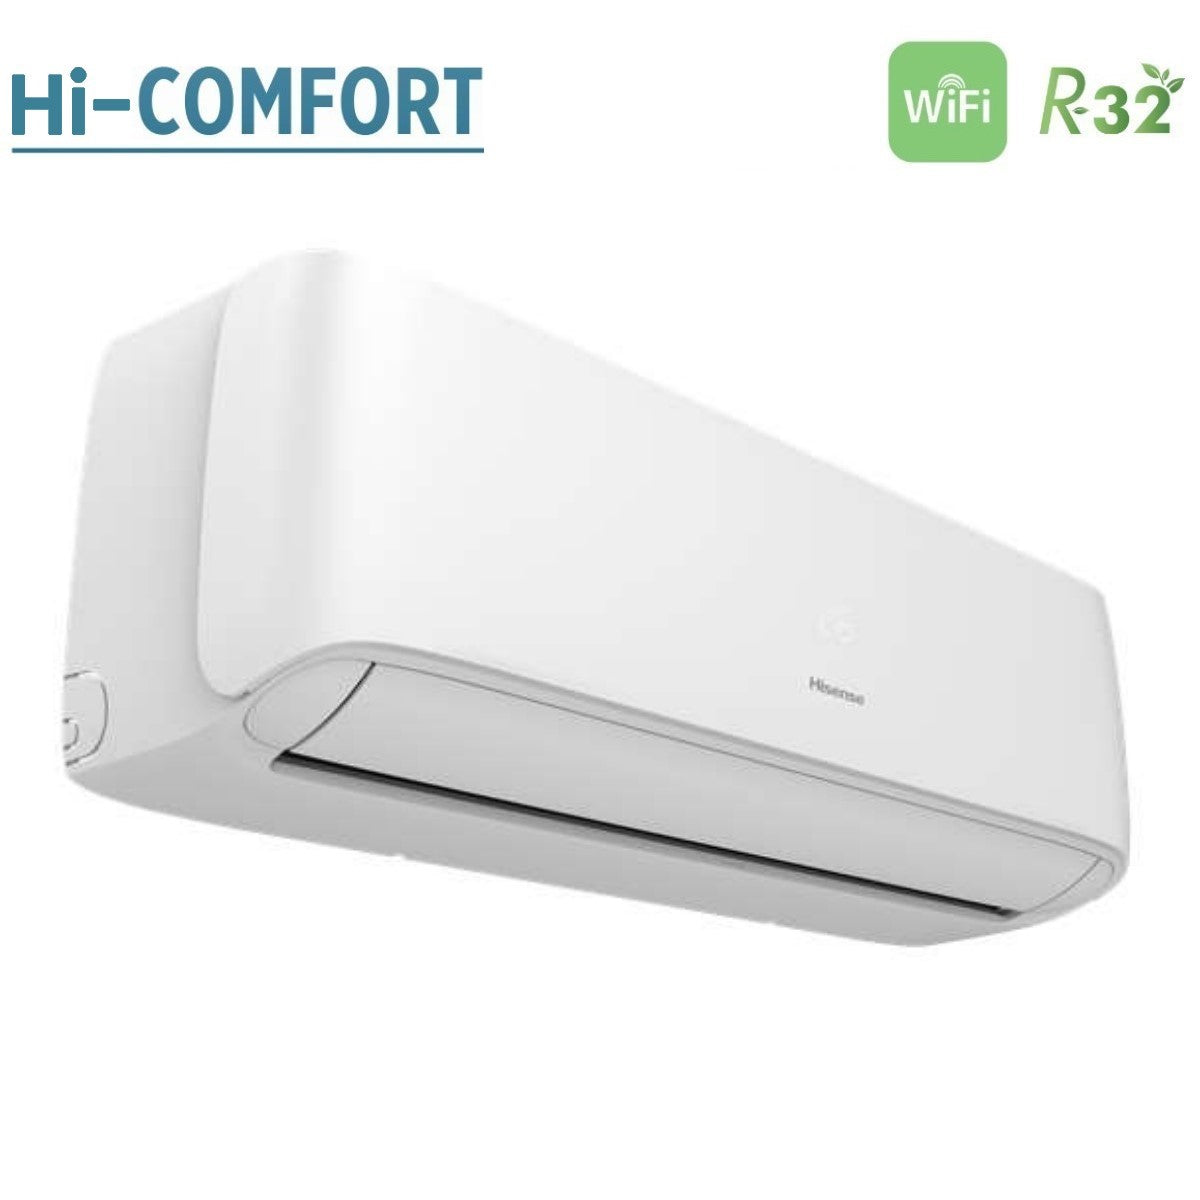 immagine-3-hisense-climatizzatore-condizionatore-hisense-inverter-serie-hi-comfort-24000-btu-cf70bt04g-r-32-wi-fi-integrato-classe-aa-novita